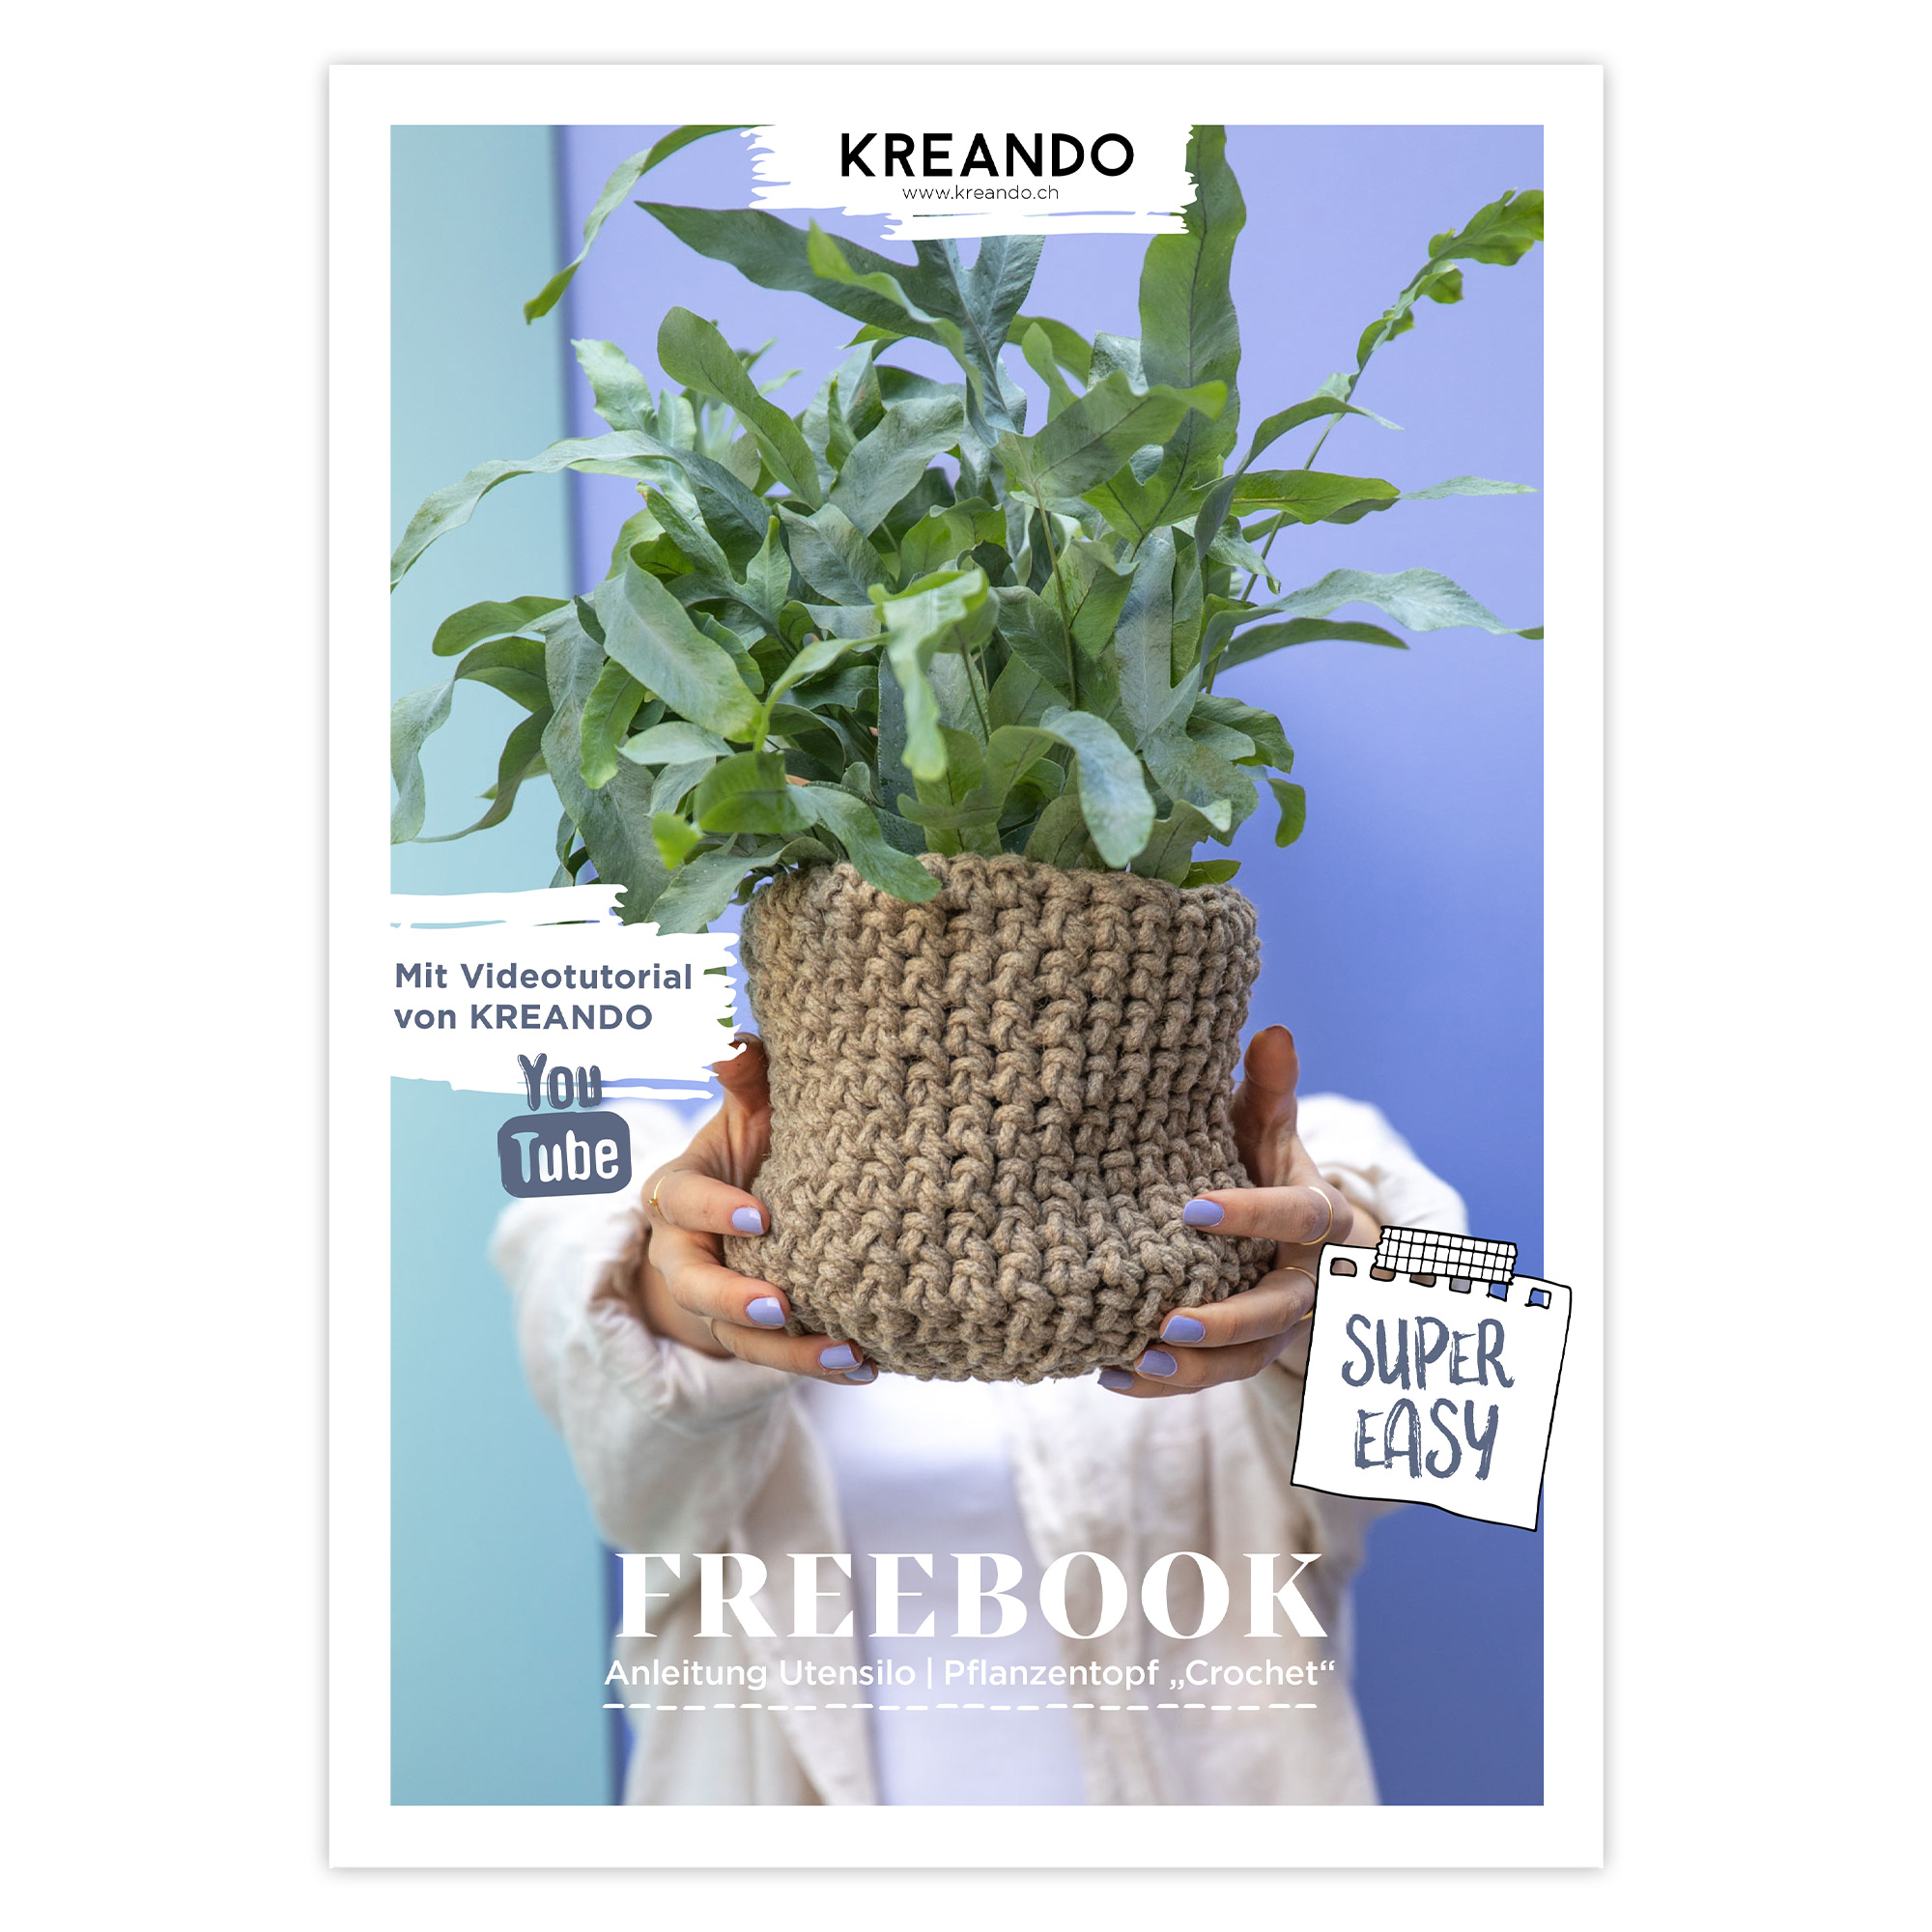 Freebook - Anleitung Utensilo/Pflanzentopf Crochet von KREANDO